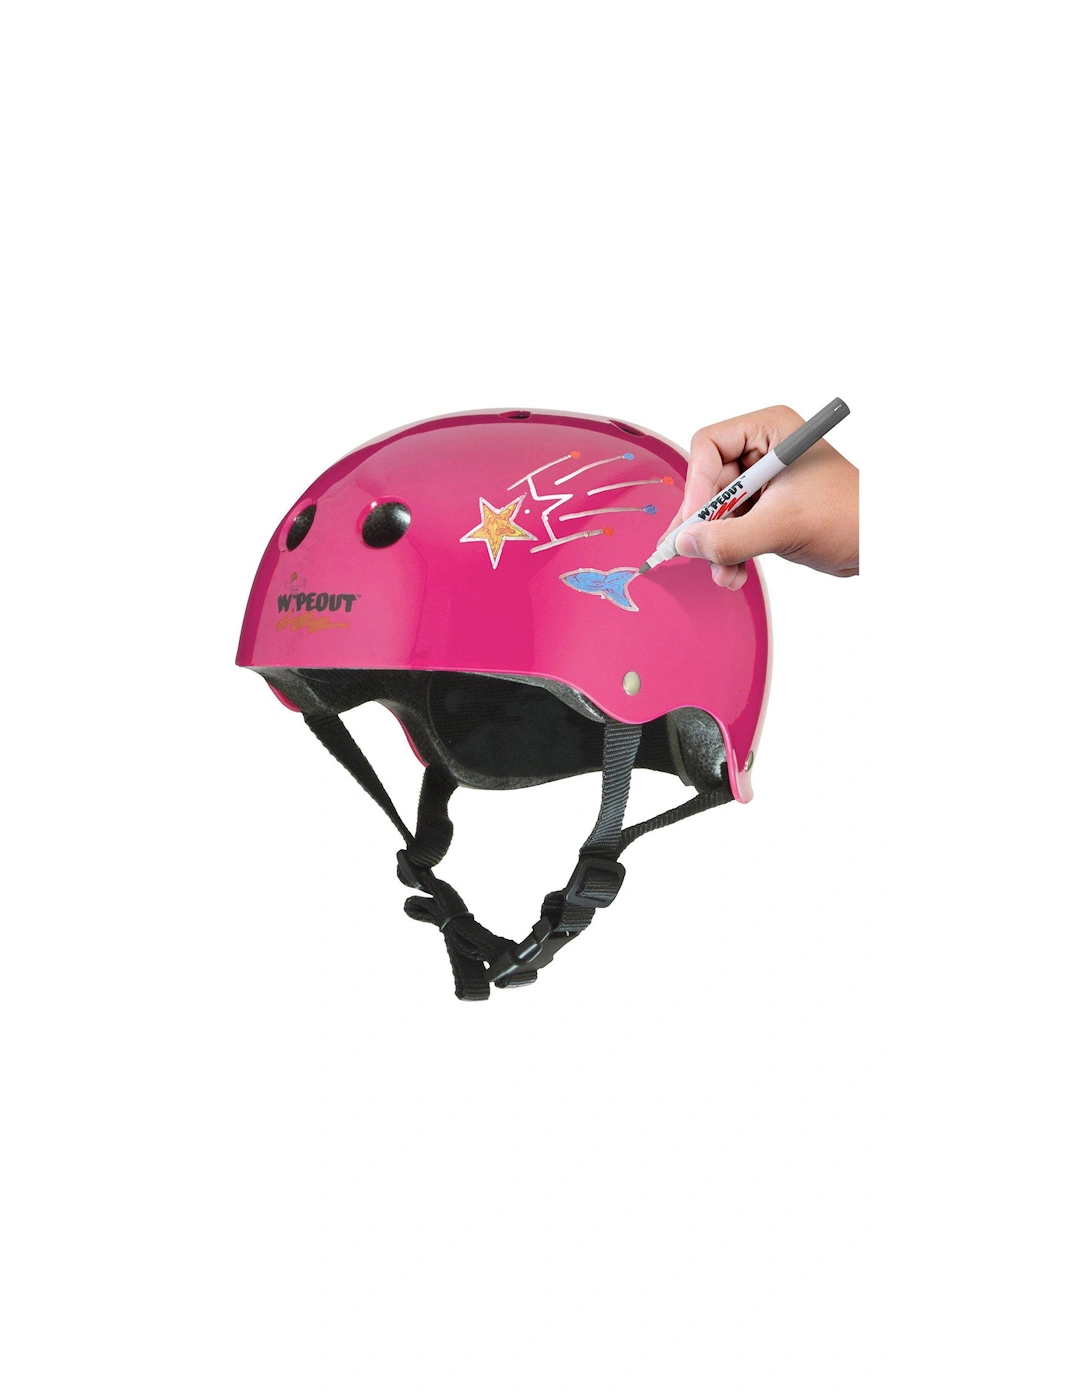 Helmet - Neon Pink, Age 5+, 2 of 1